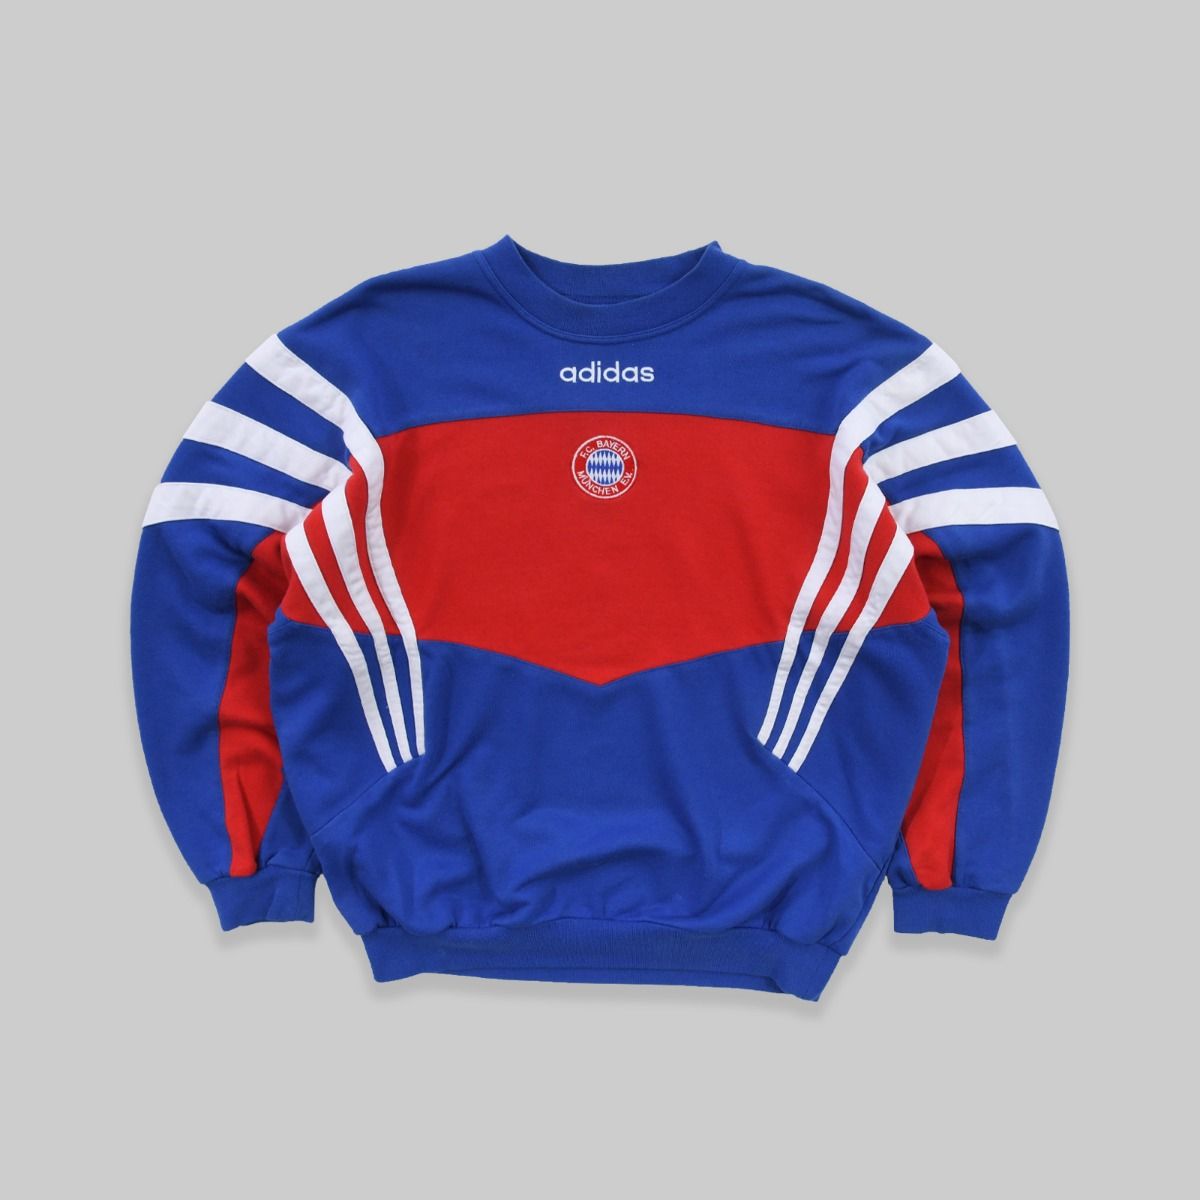 Adidas X Bayern Munich 1980s Sweatshirt